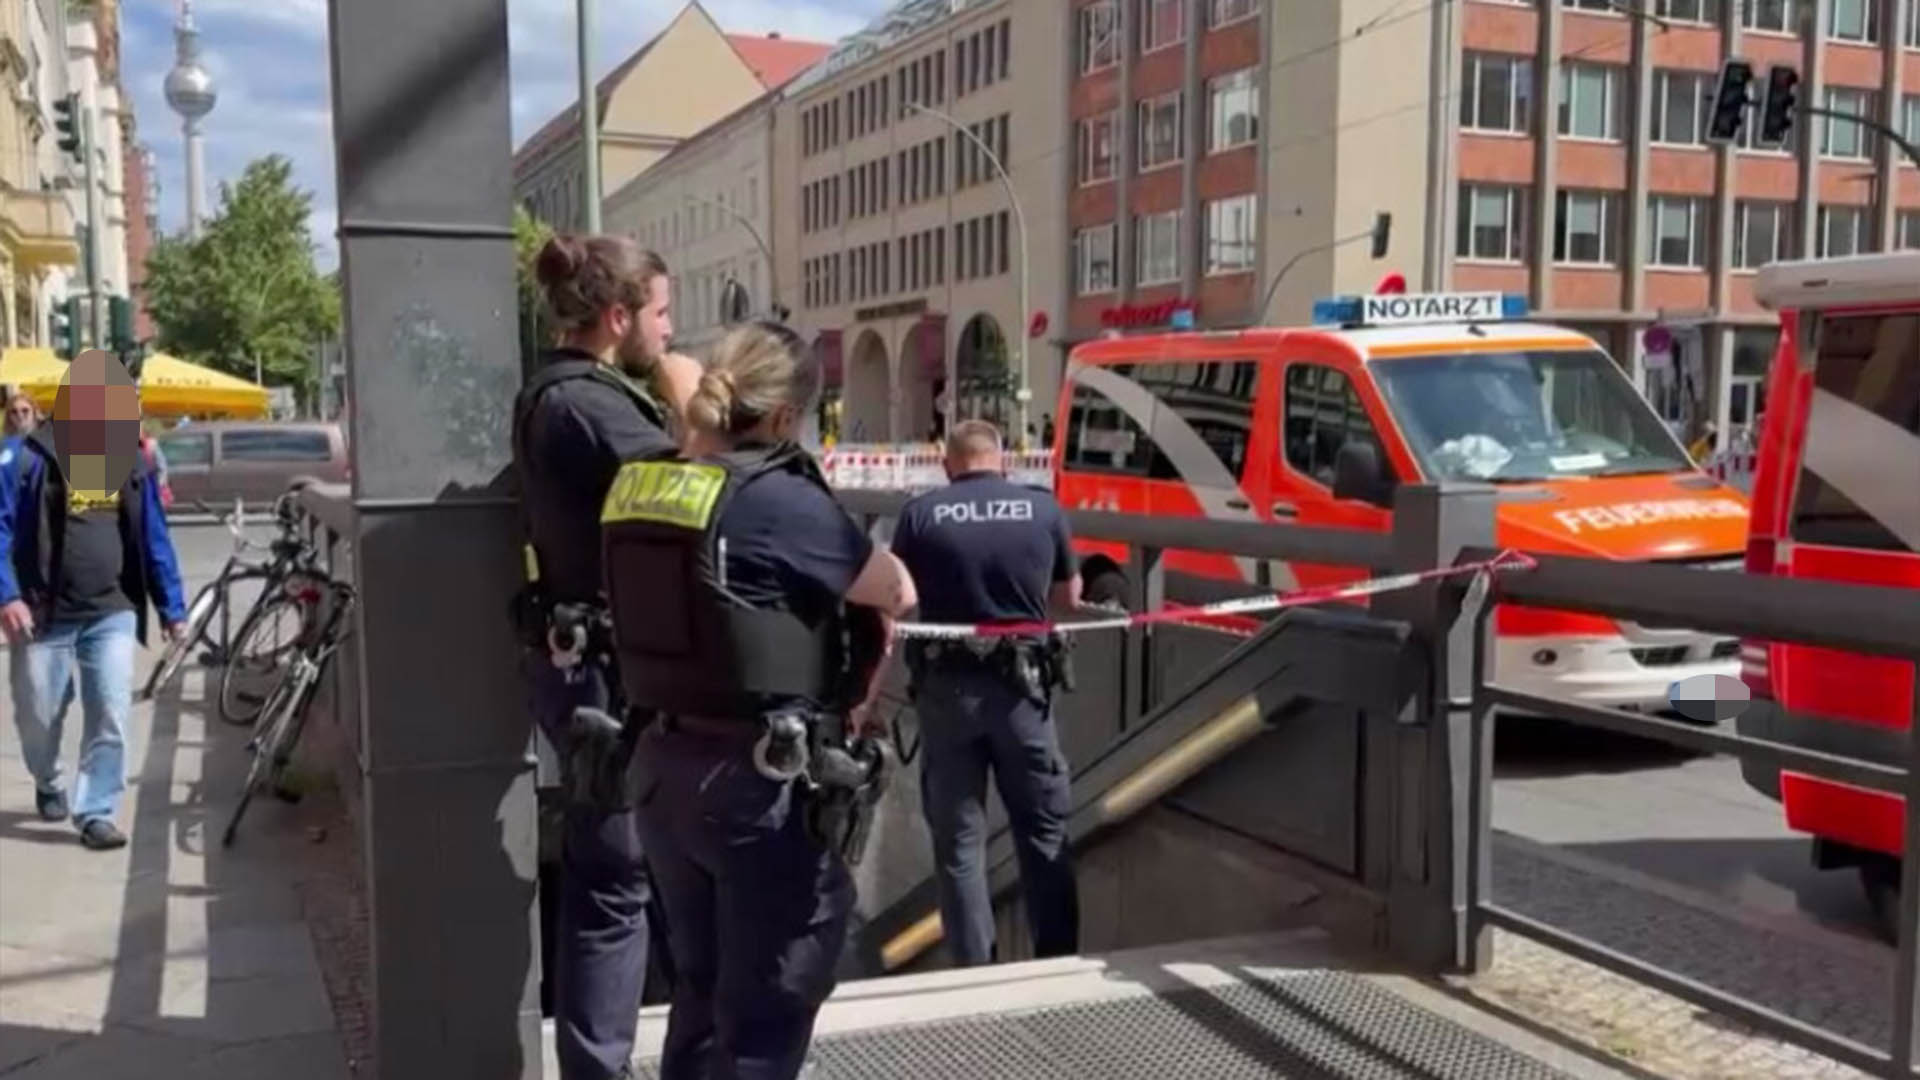 Polizeieinsatz nach einem tötlichen Unfall am S-Bahnhof Oranienburger Tor in Berlin Mitte. (Quelle: rbb)